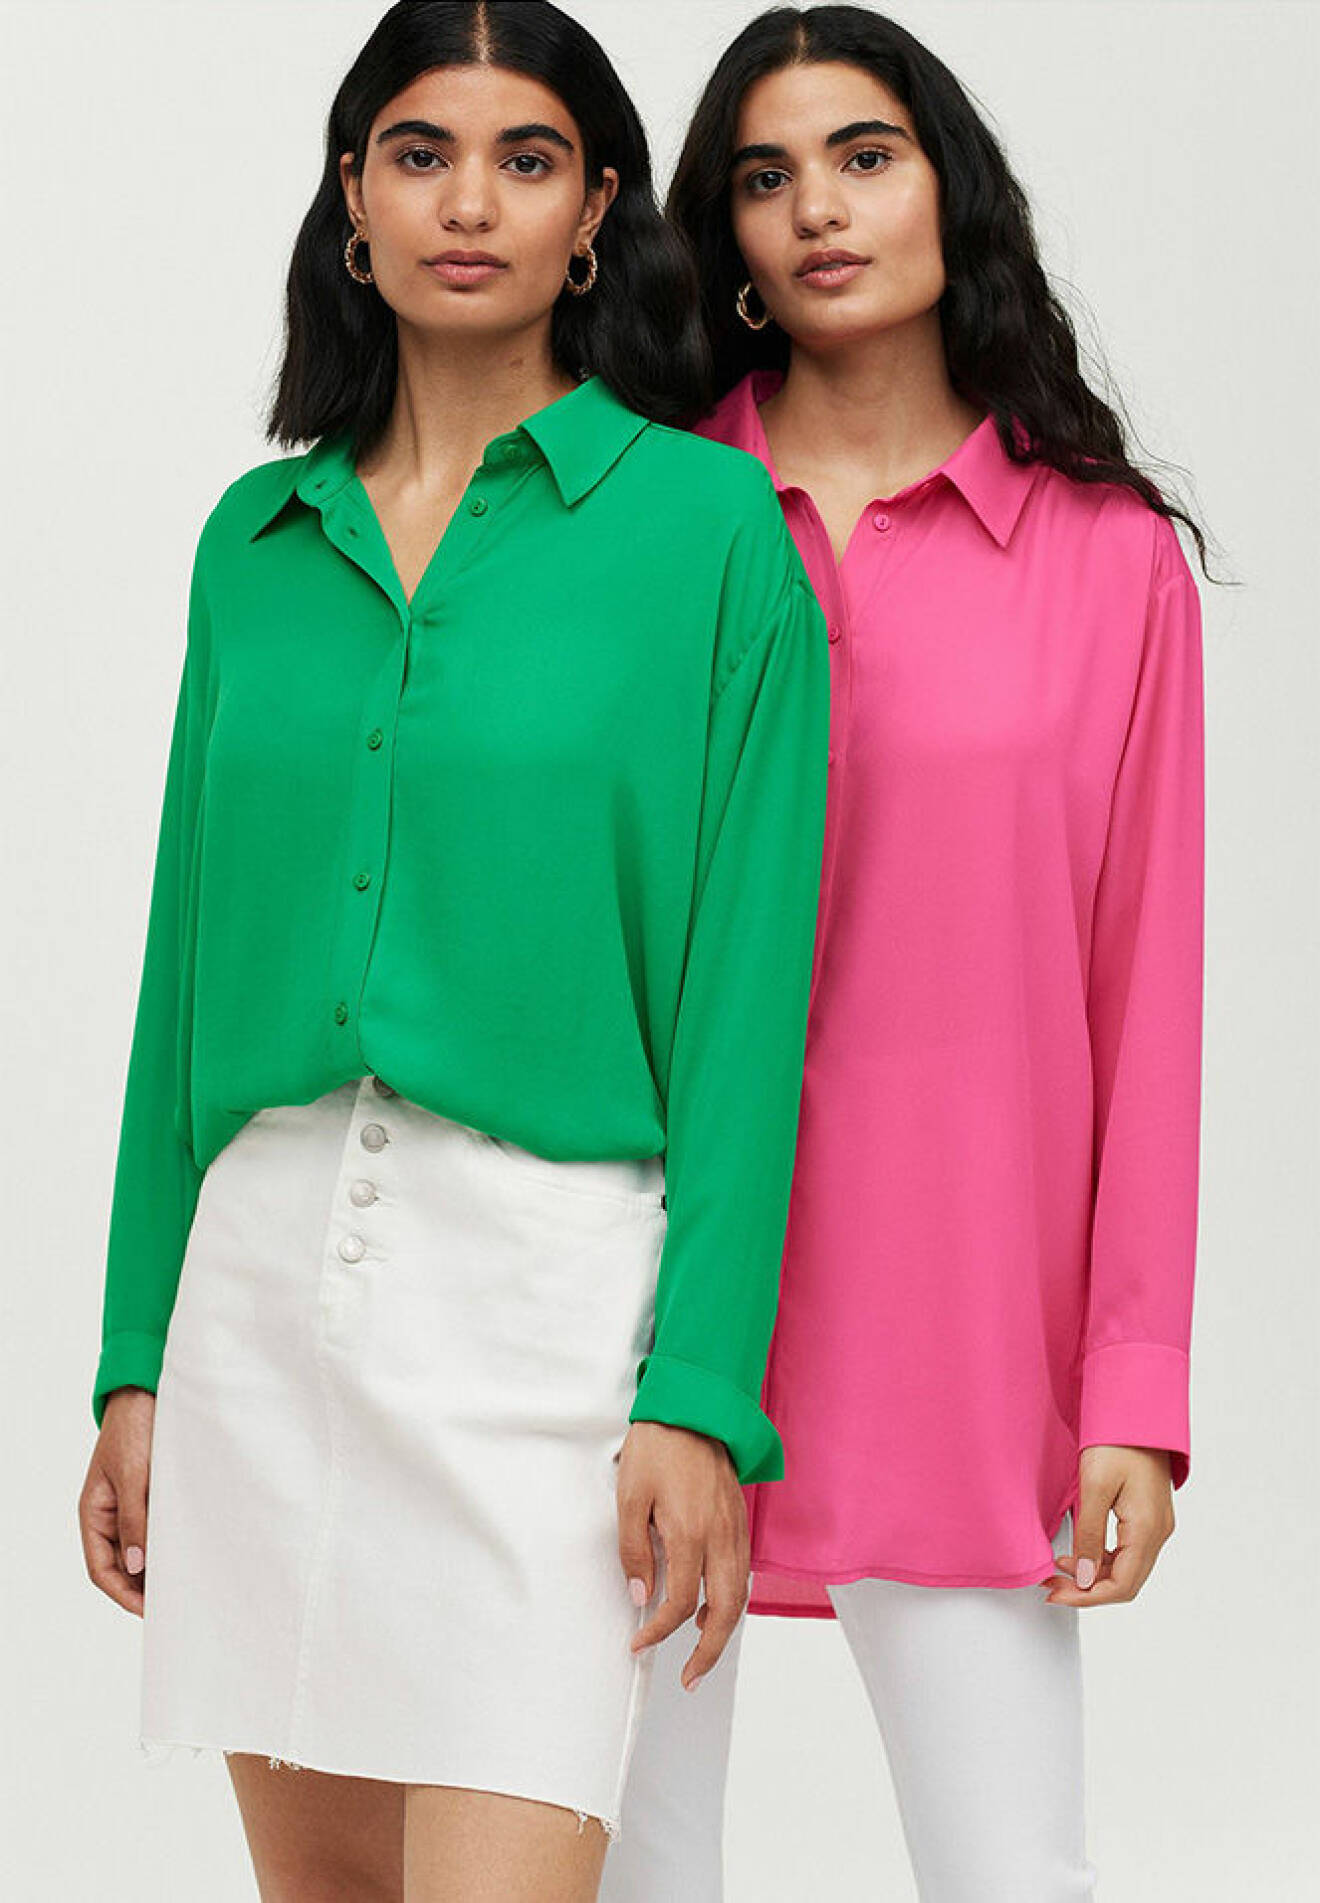 grön och rosa skjorta från Ellos Collection till sommaren och hösten 2021